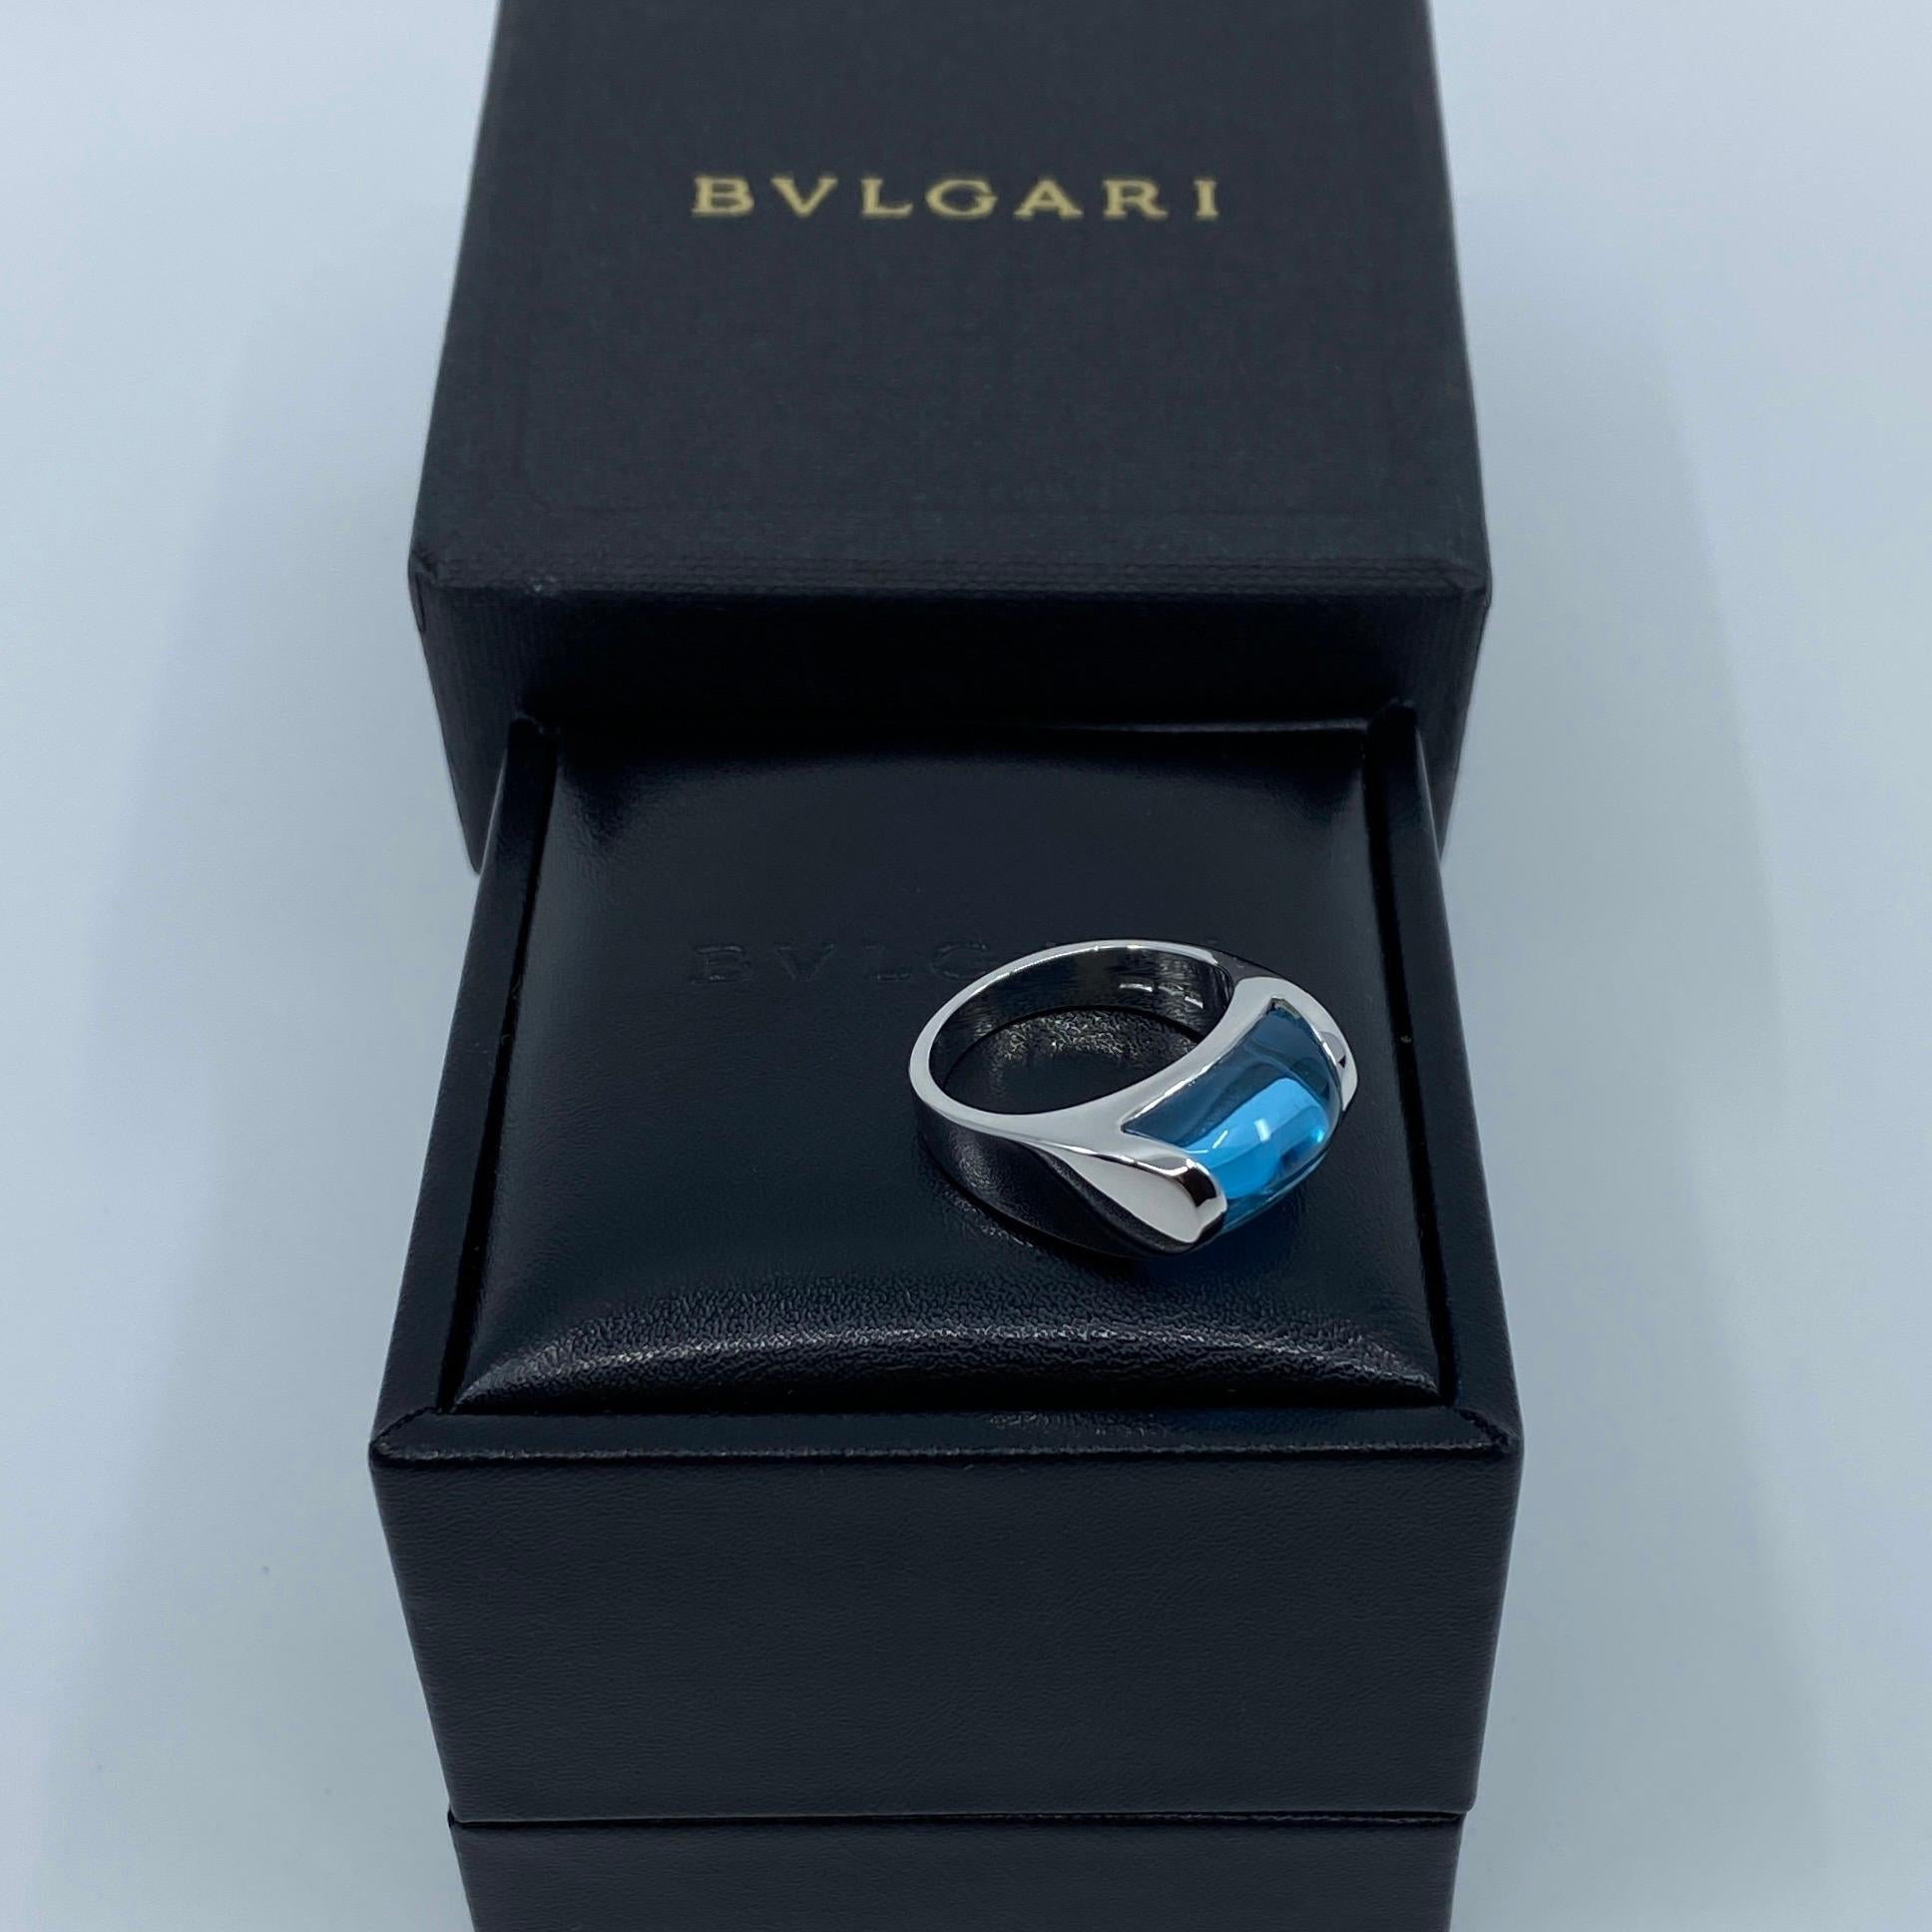 Vintage Bvlgari Bulgari Tronchetto 18 Karat White Gold Blue Topaz Ring with Box 5